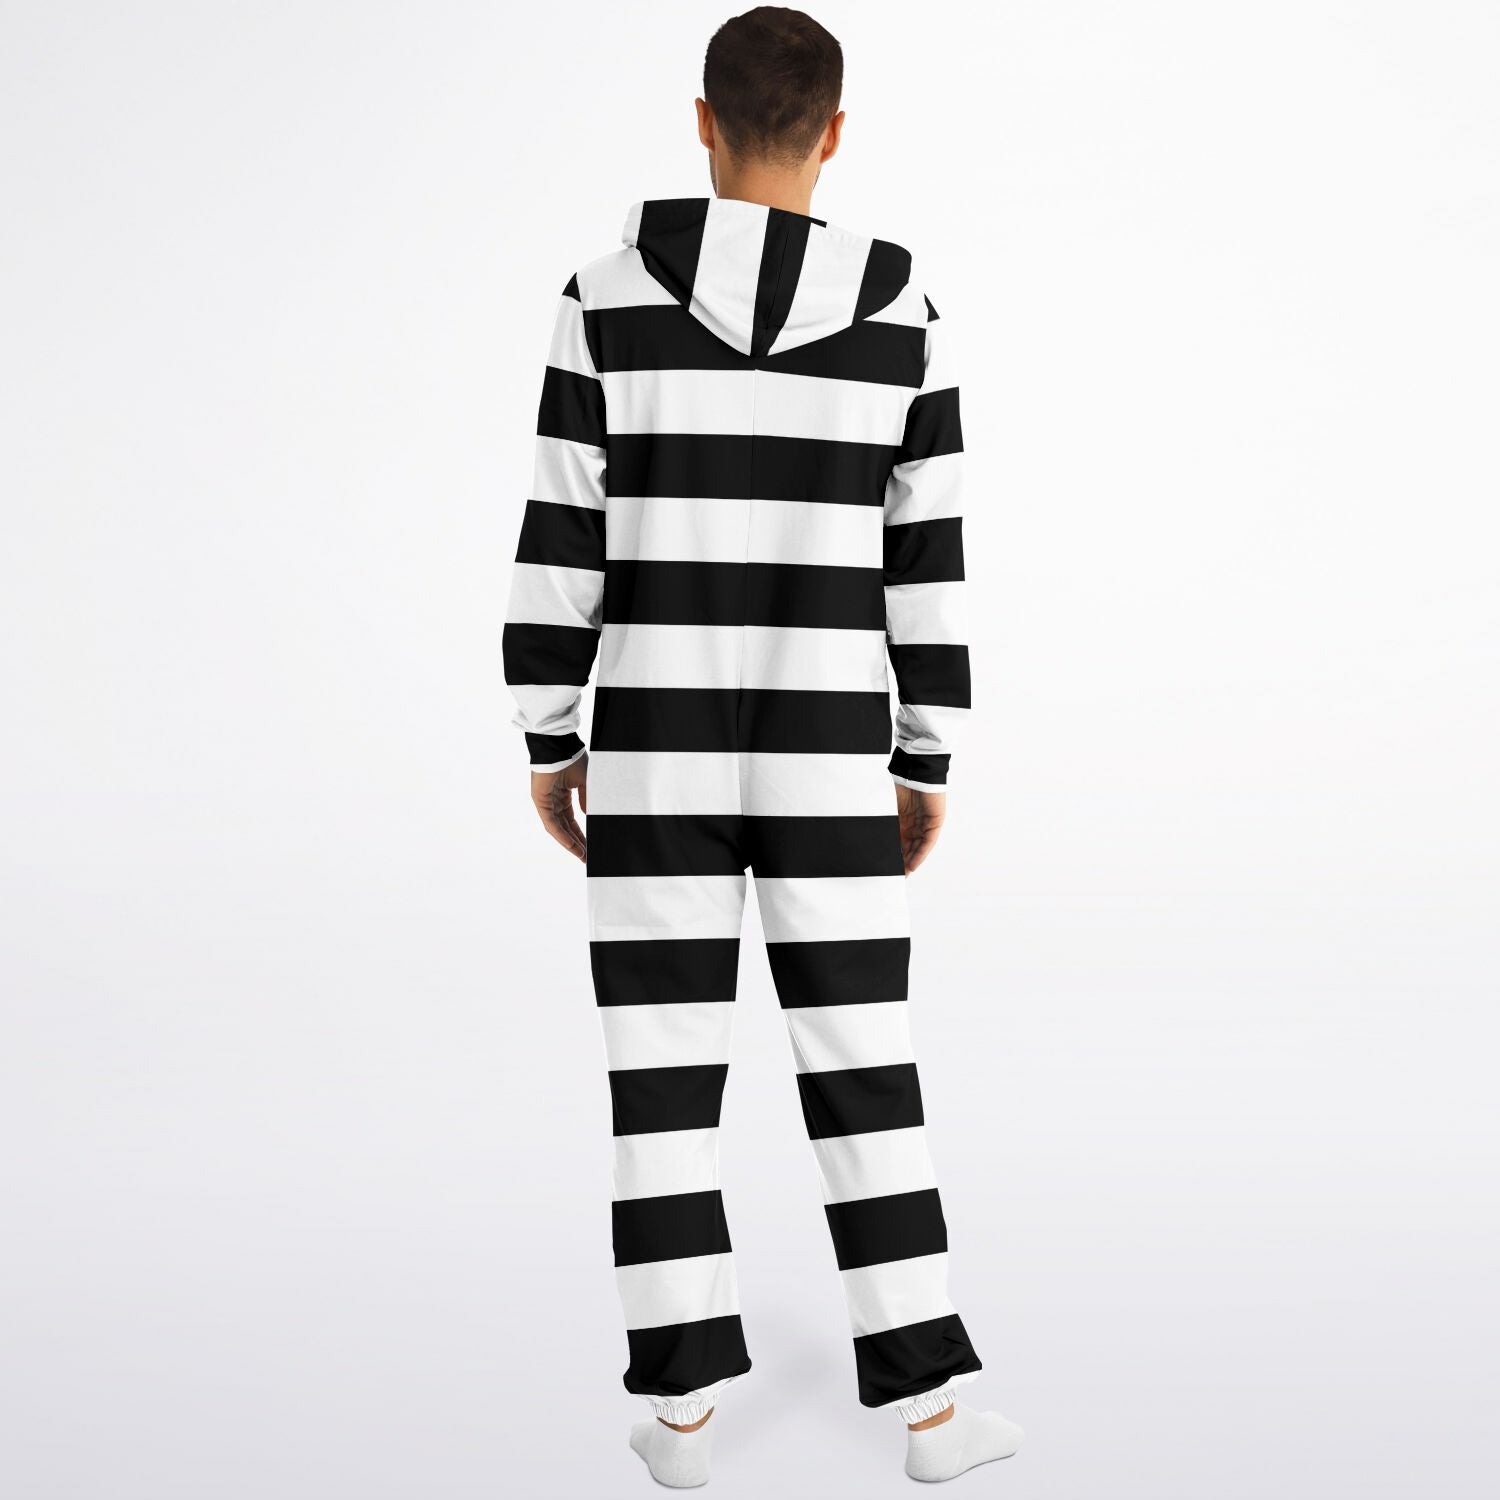 Prison Stripes Costume Jumpsuit